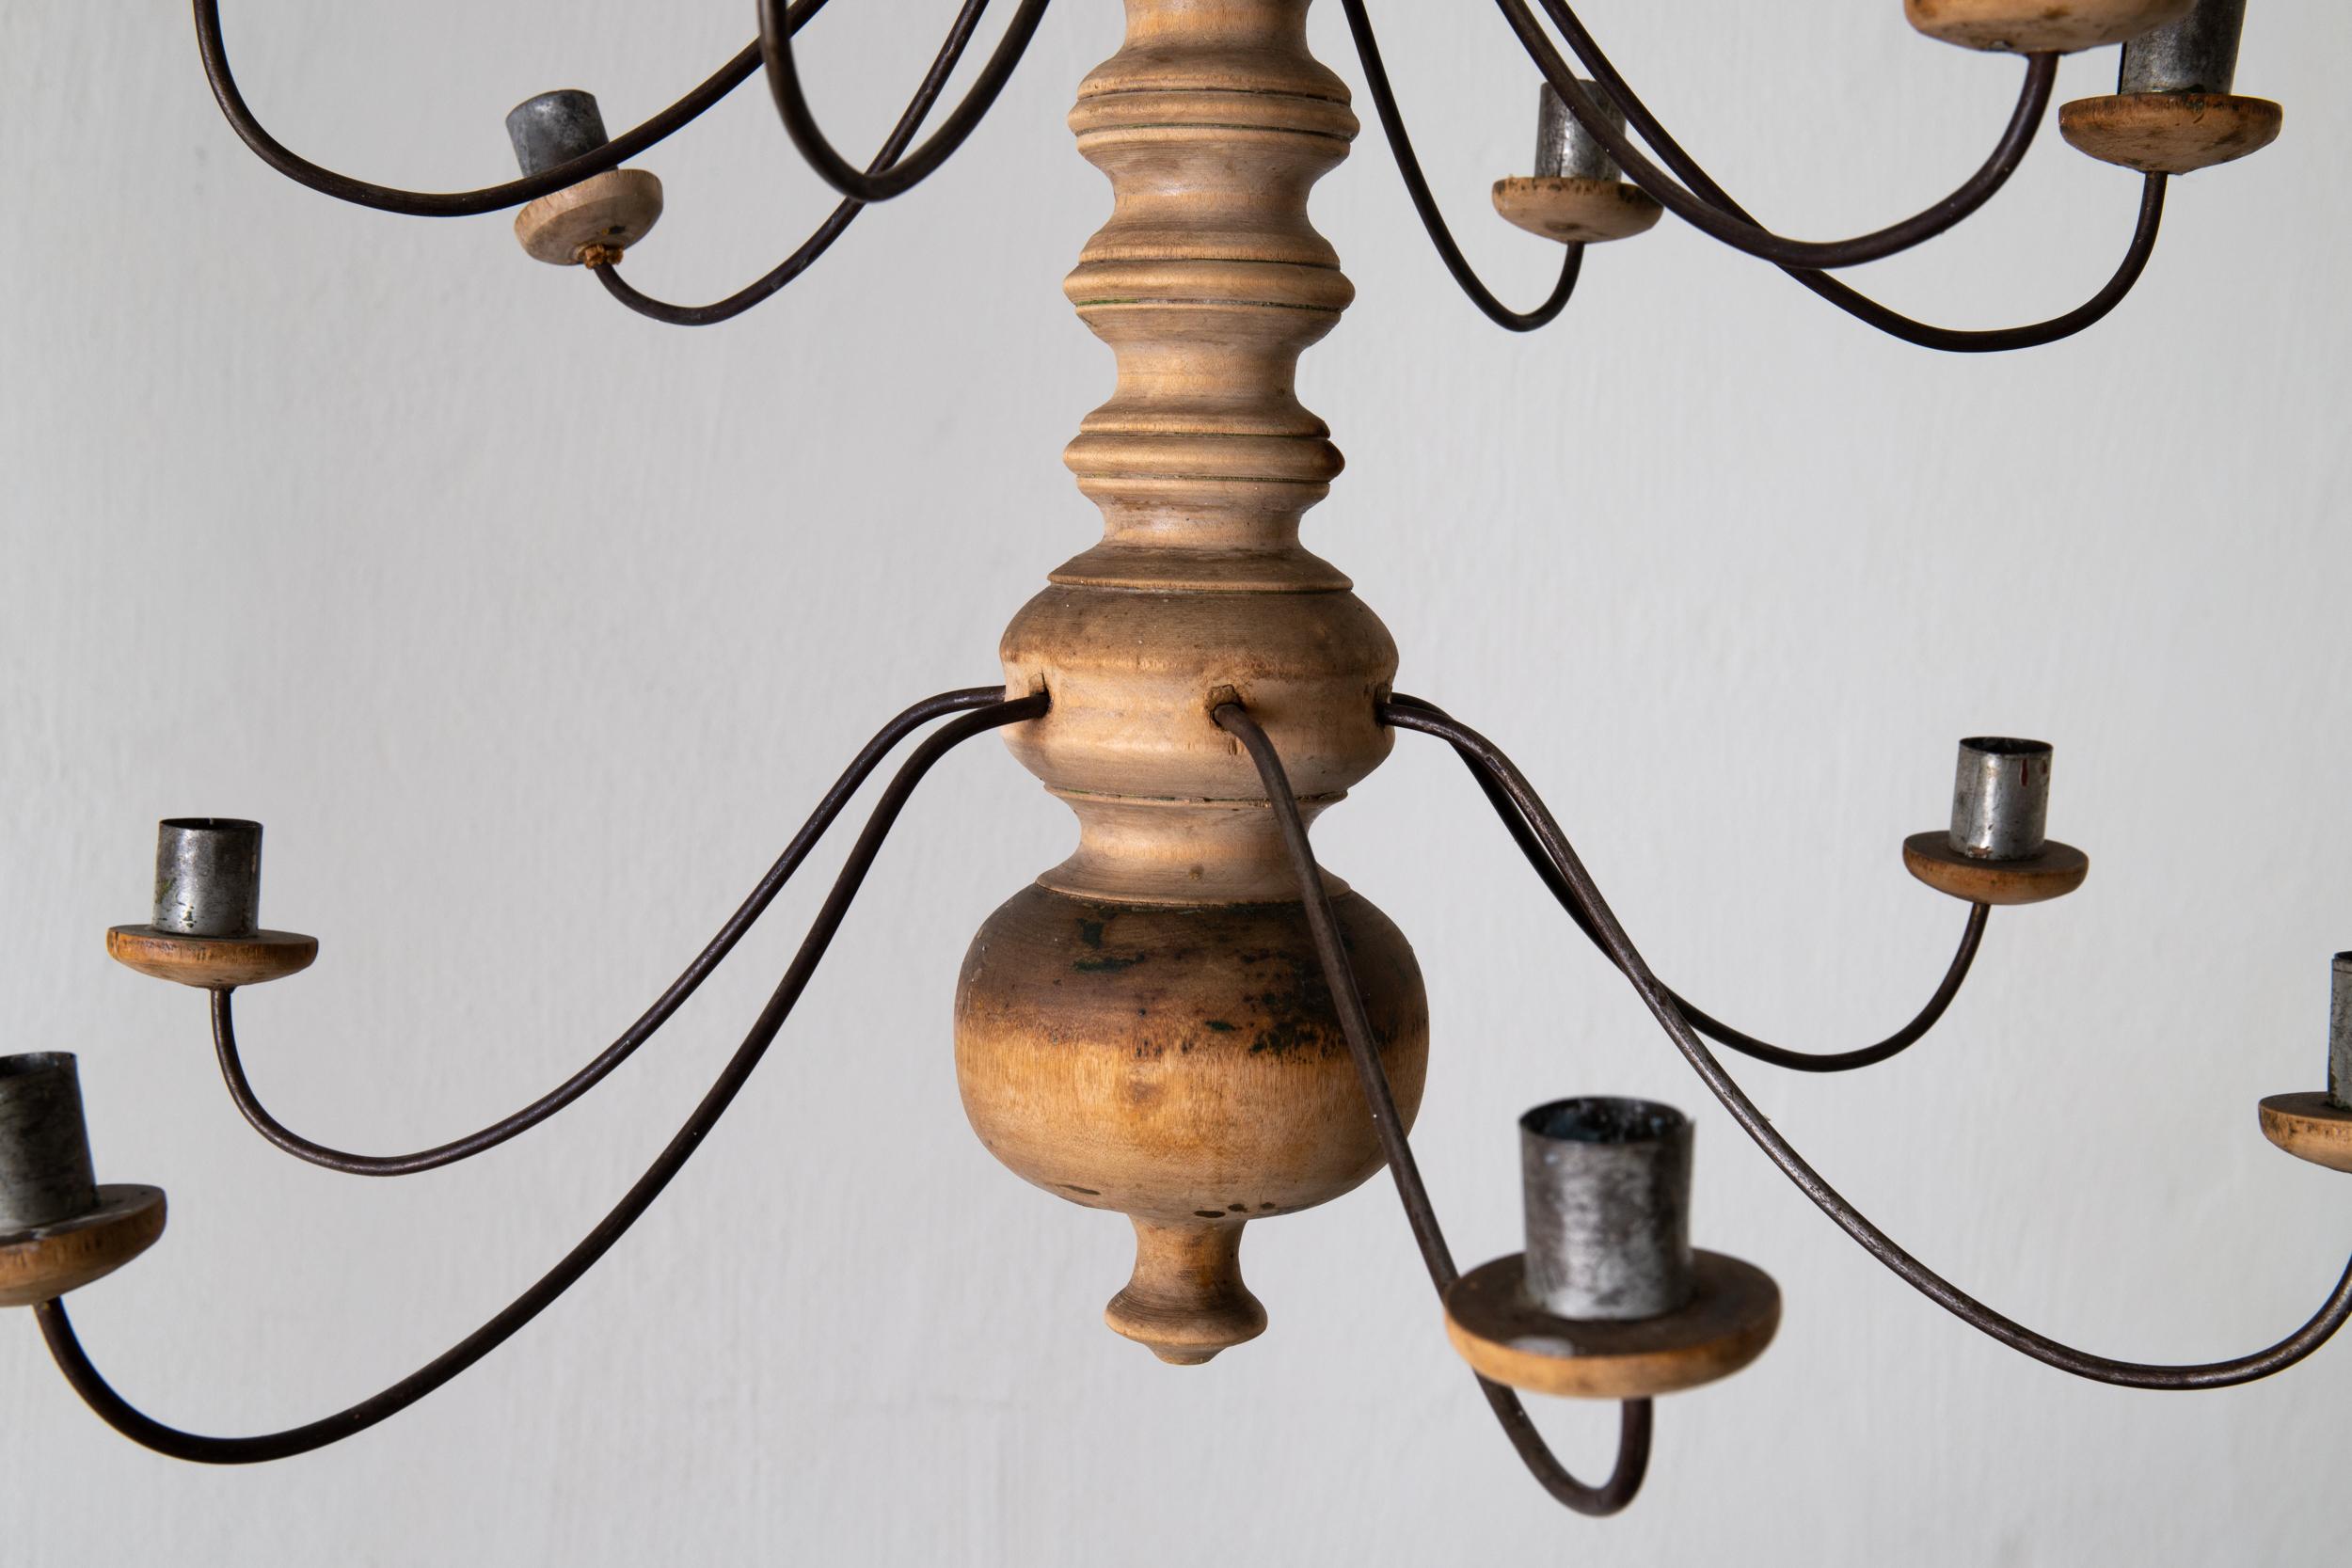 Kronleuchter Holz rustikal schwedischen 18. Jahrhundert, Schweden. Ein Kronleuchter, der im 18. Jahrhundert in Schweden hergestellt wurde. Korpus aus Holz mit Kerzenhaltern aus Metall für 16 Kerzen.